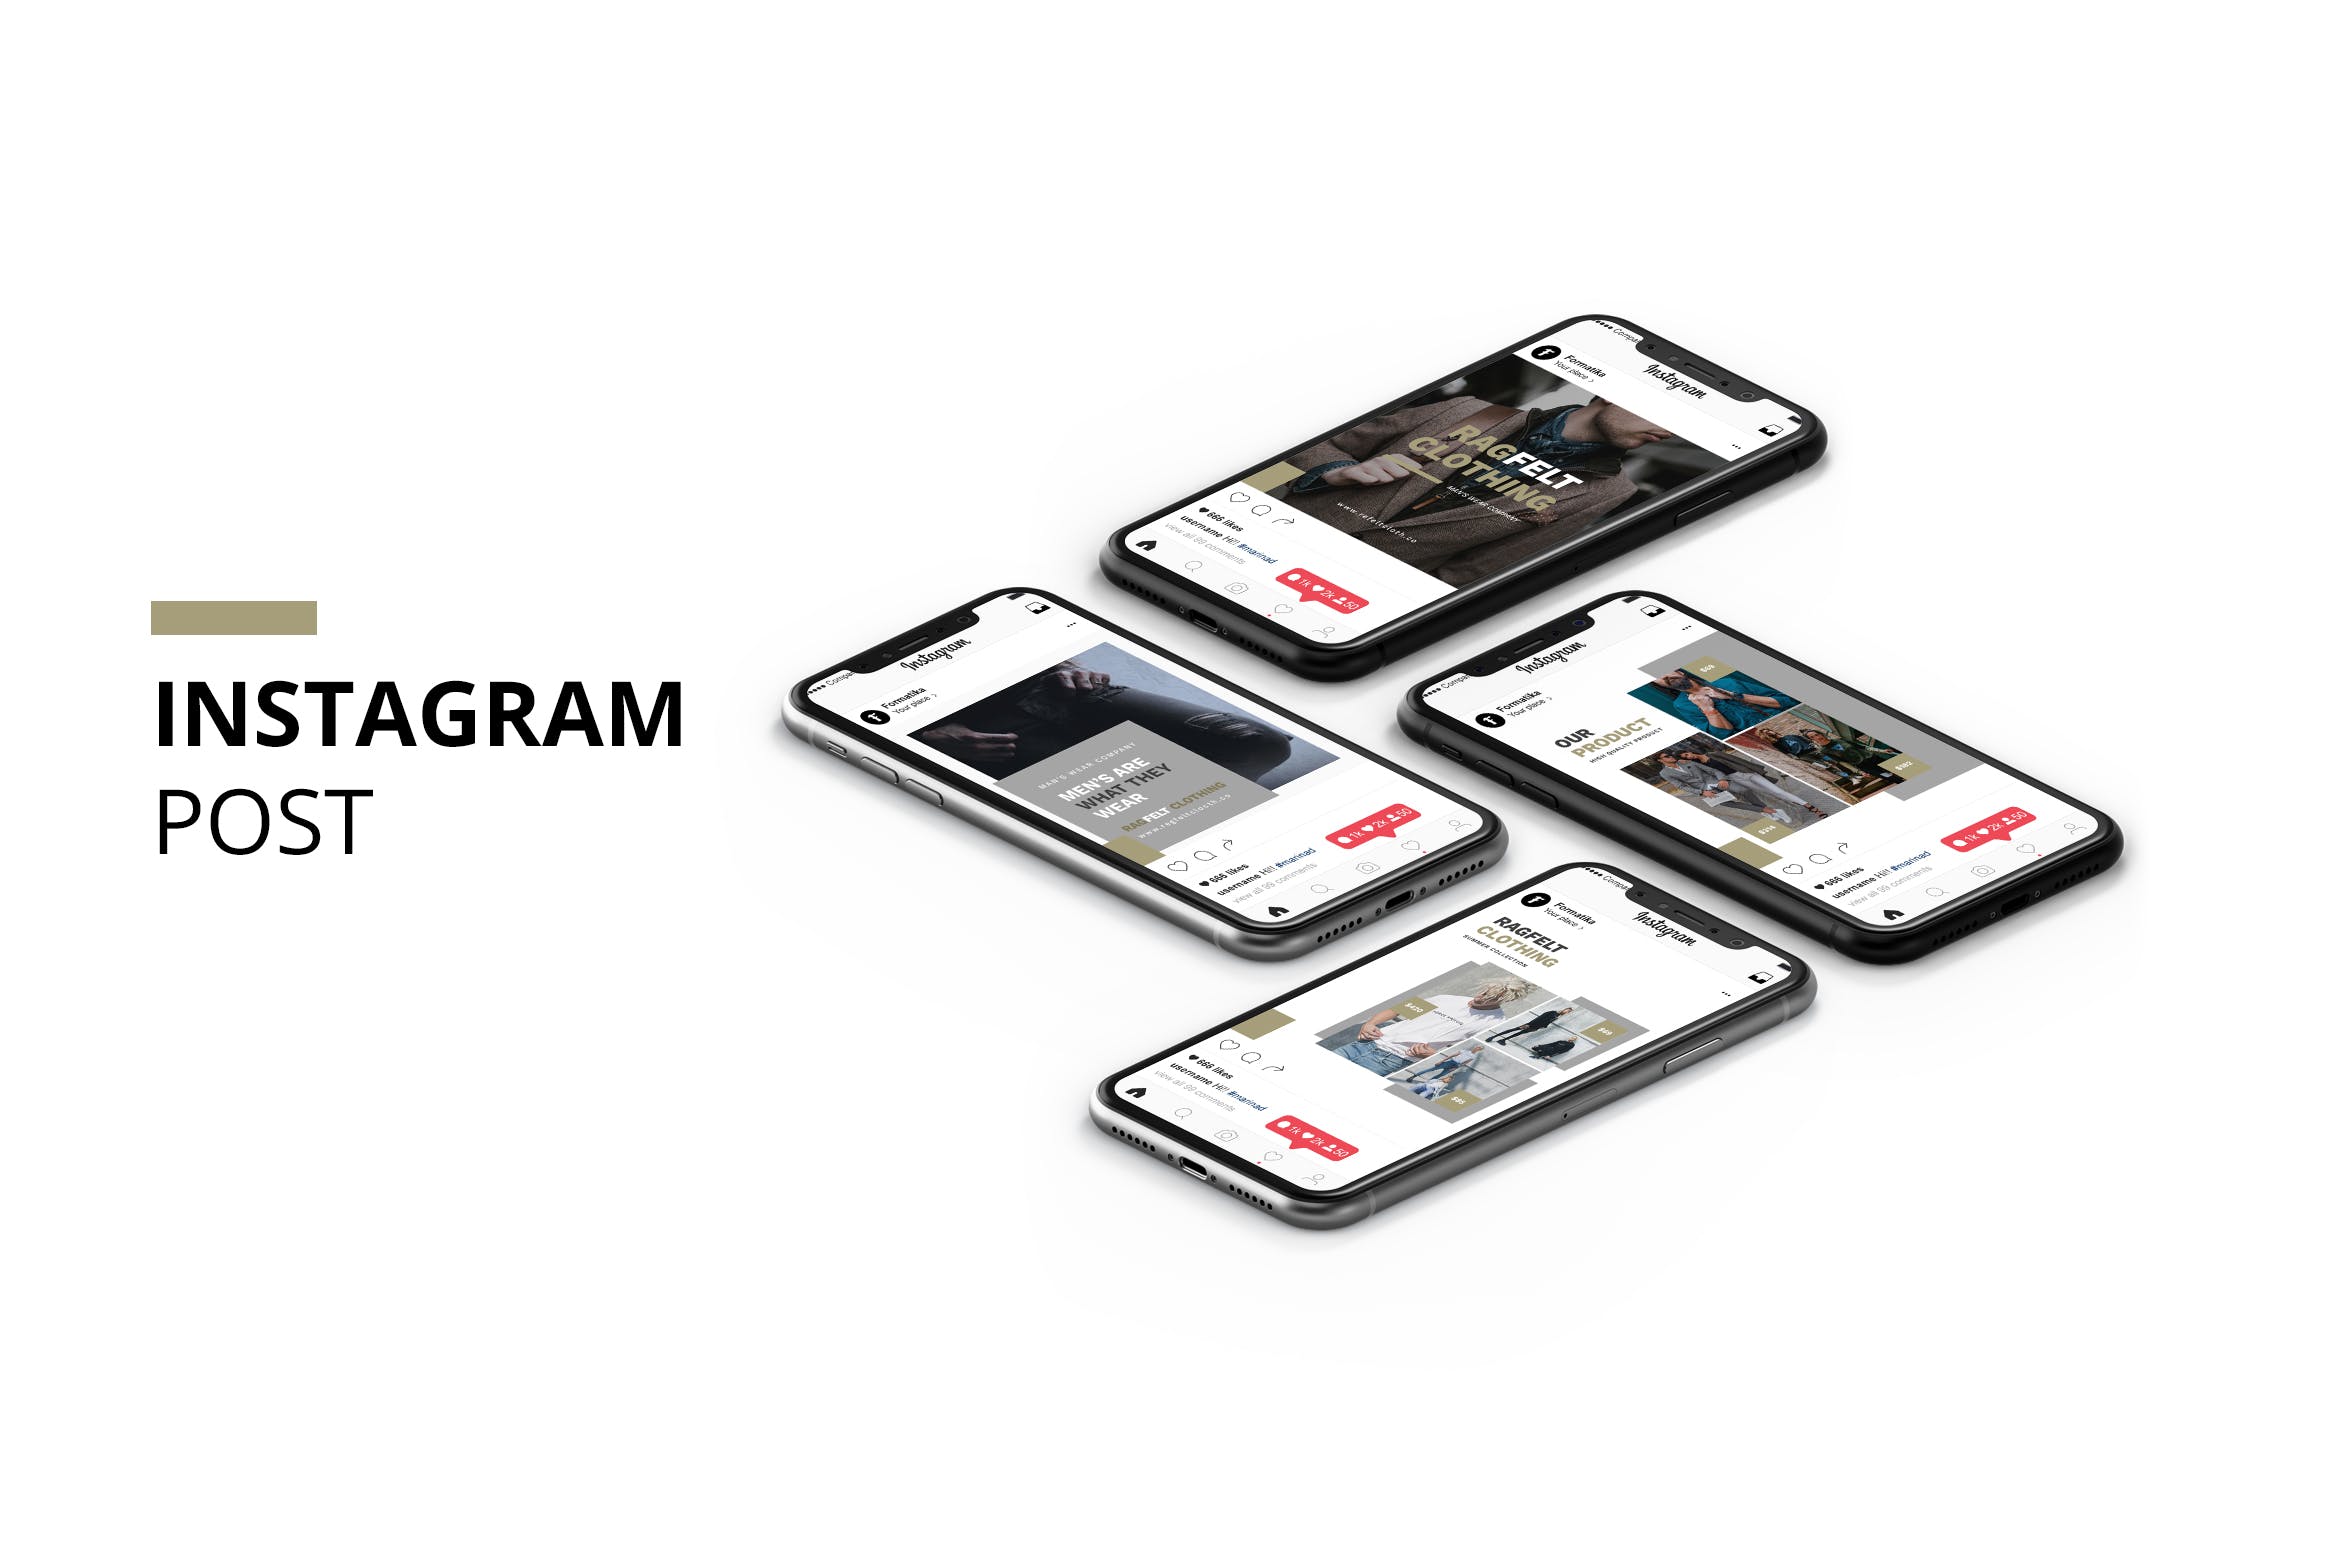 男装品牌推广Instagram贴图设计模板蚂蚁素材精选 Ragfelt Man Fashion Instagram Post插图